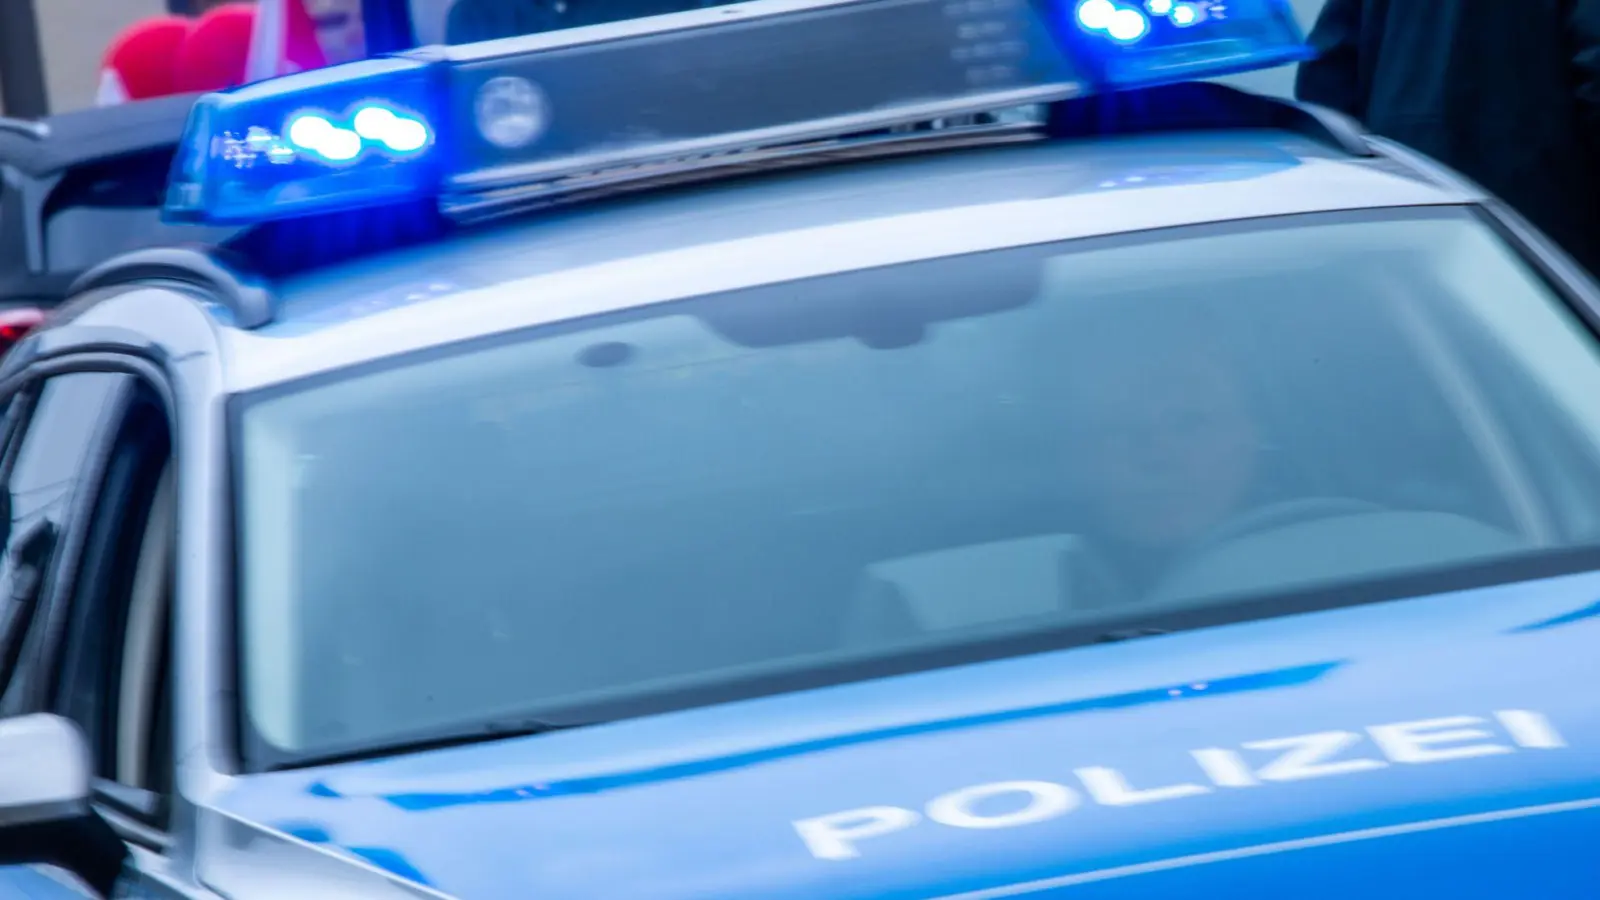 Zeugen, die Hinweise zu dem Unfall auf der Schlosskreuzung geben können, sollen sich bei der Ansbacher Polizei melden. (Symbolbild: Jens Büttner/dpa)